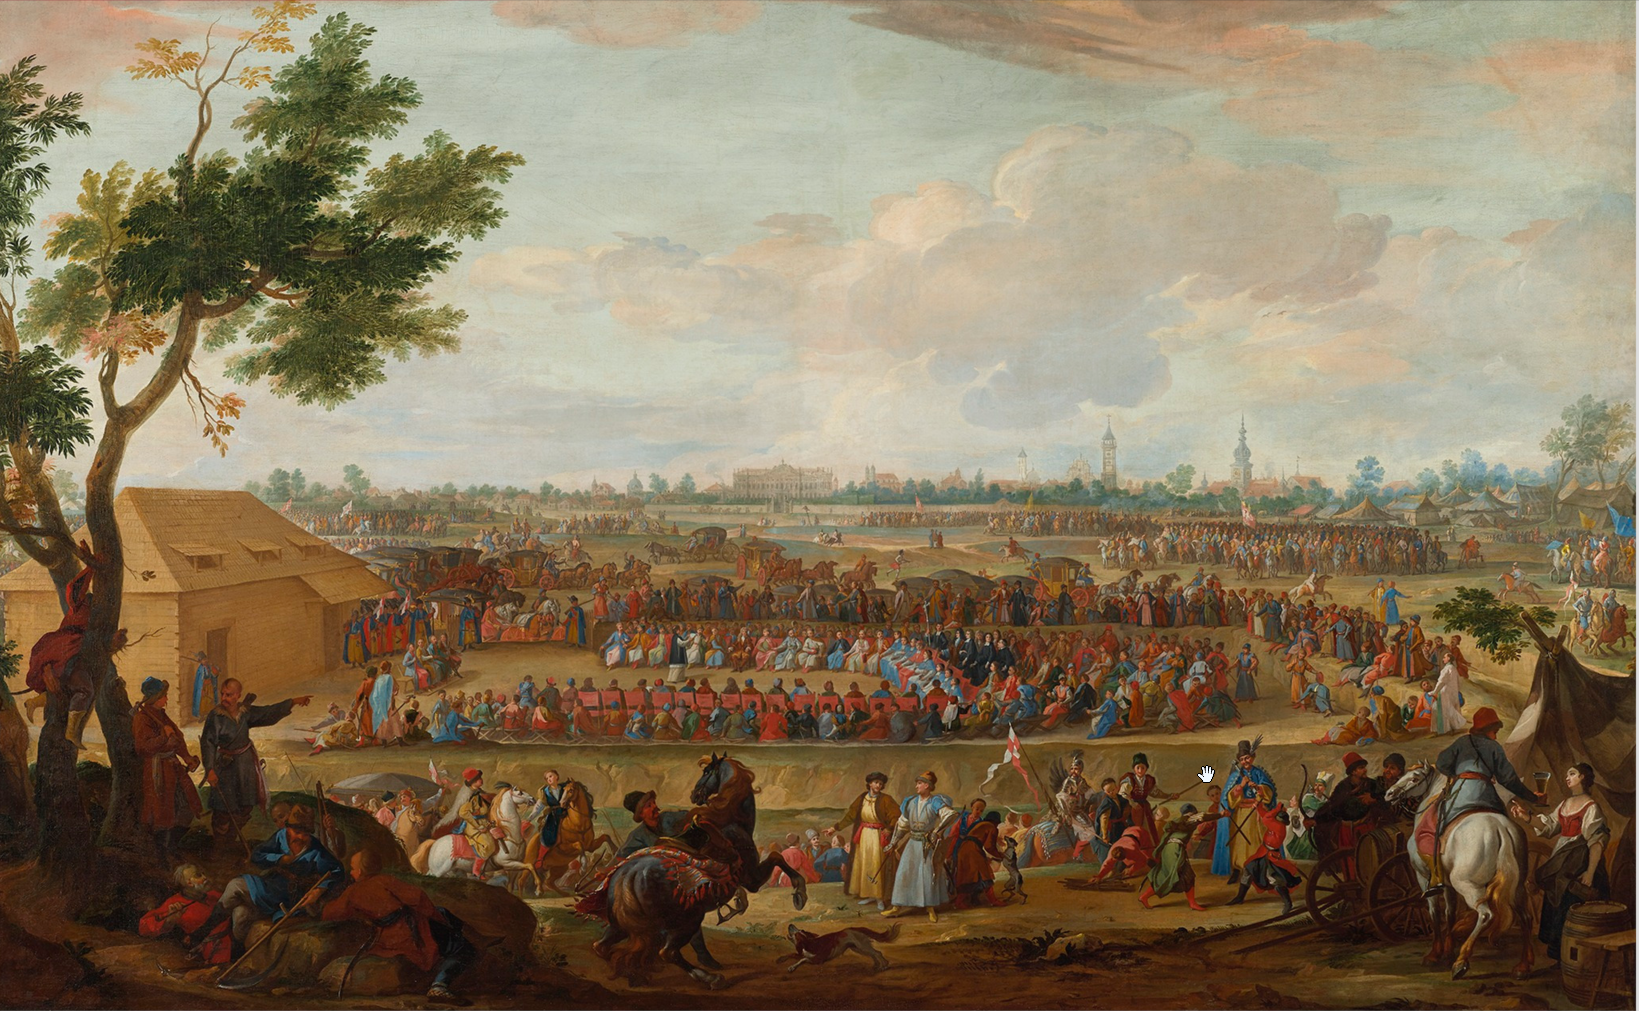  
Obraz przedstawia Sejm elekcyjny 1697 rok. Ogromny teren na środku pola a na nim zebranie setek osób. Na horyzoncie miasto, pas wież, drzew. 
